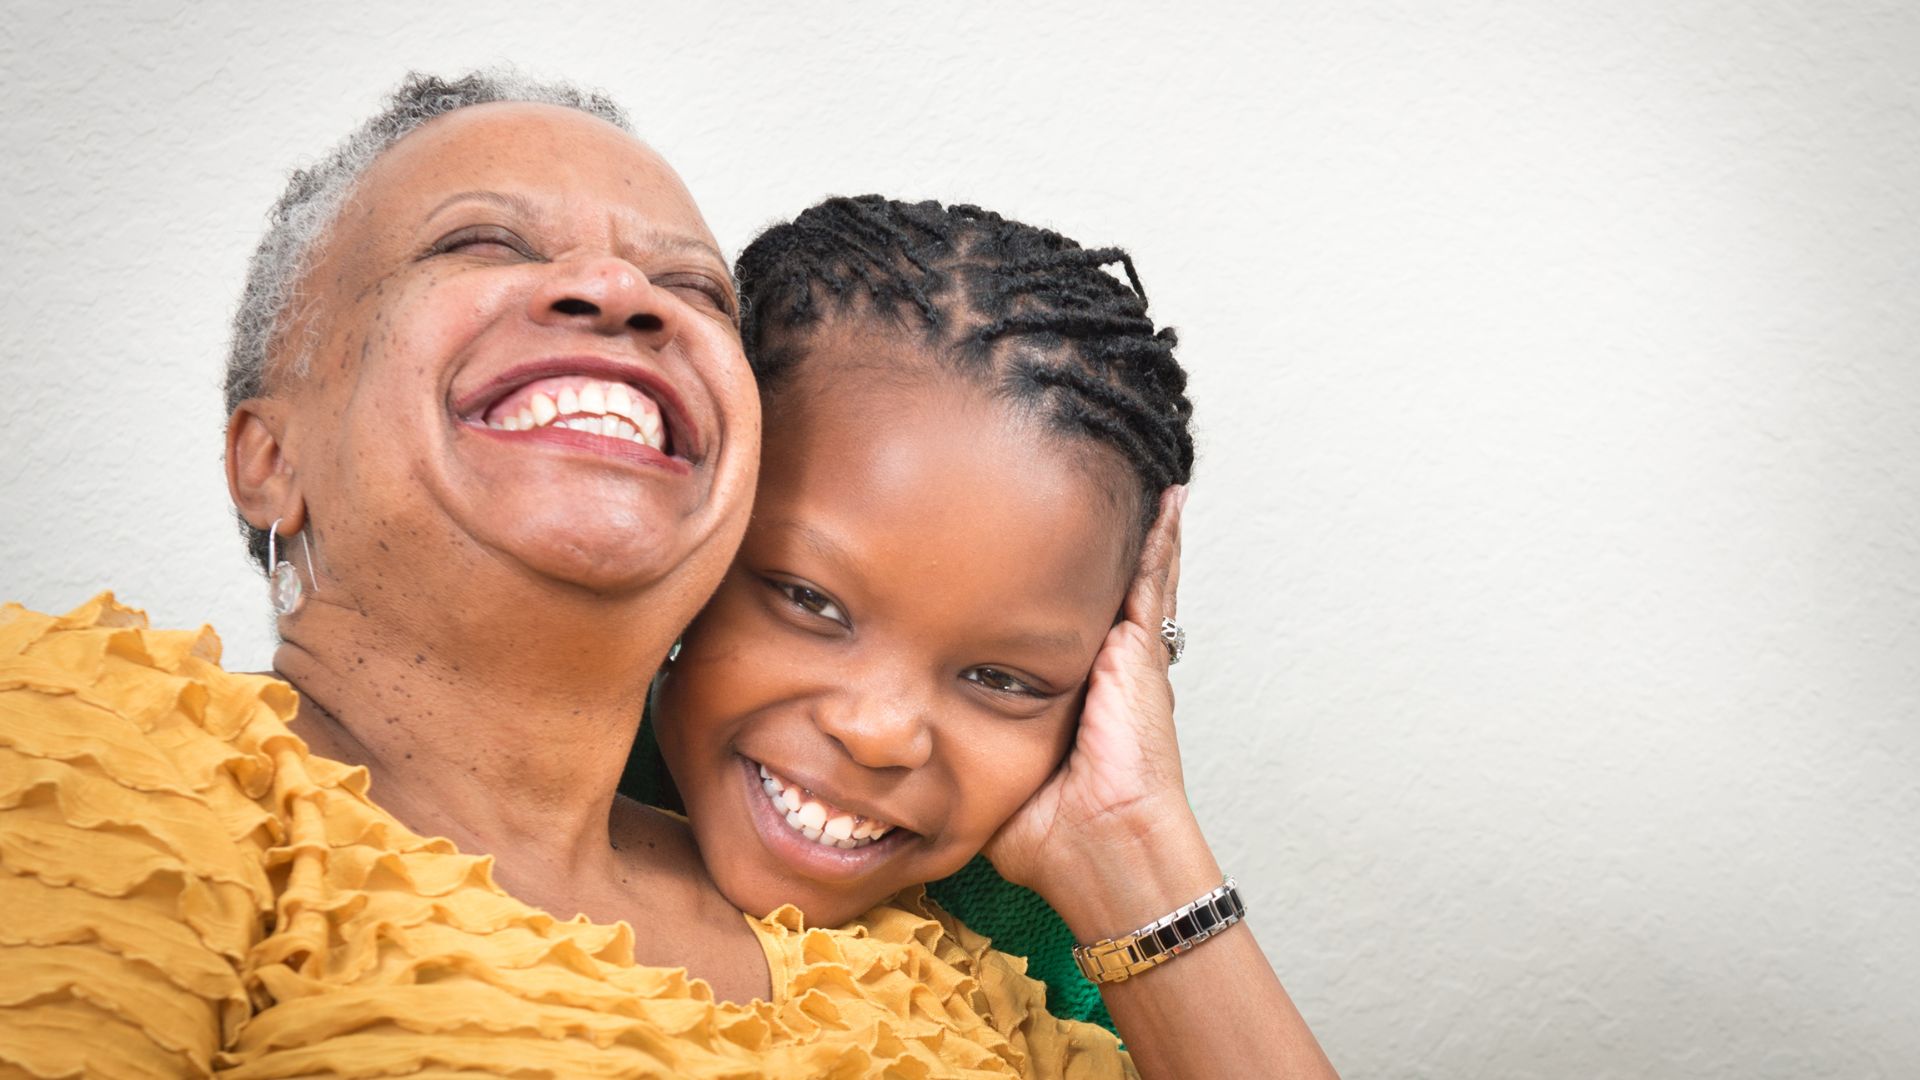 Imagem de uma senhora negra abraçando um garoto que parece ser seu neto, ambos estão sorrindo